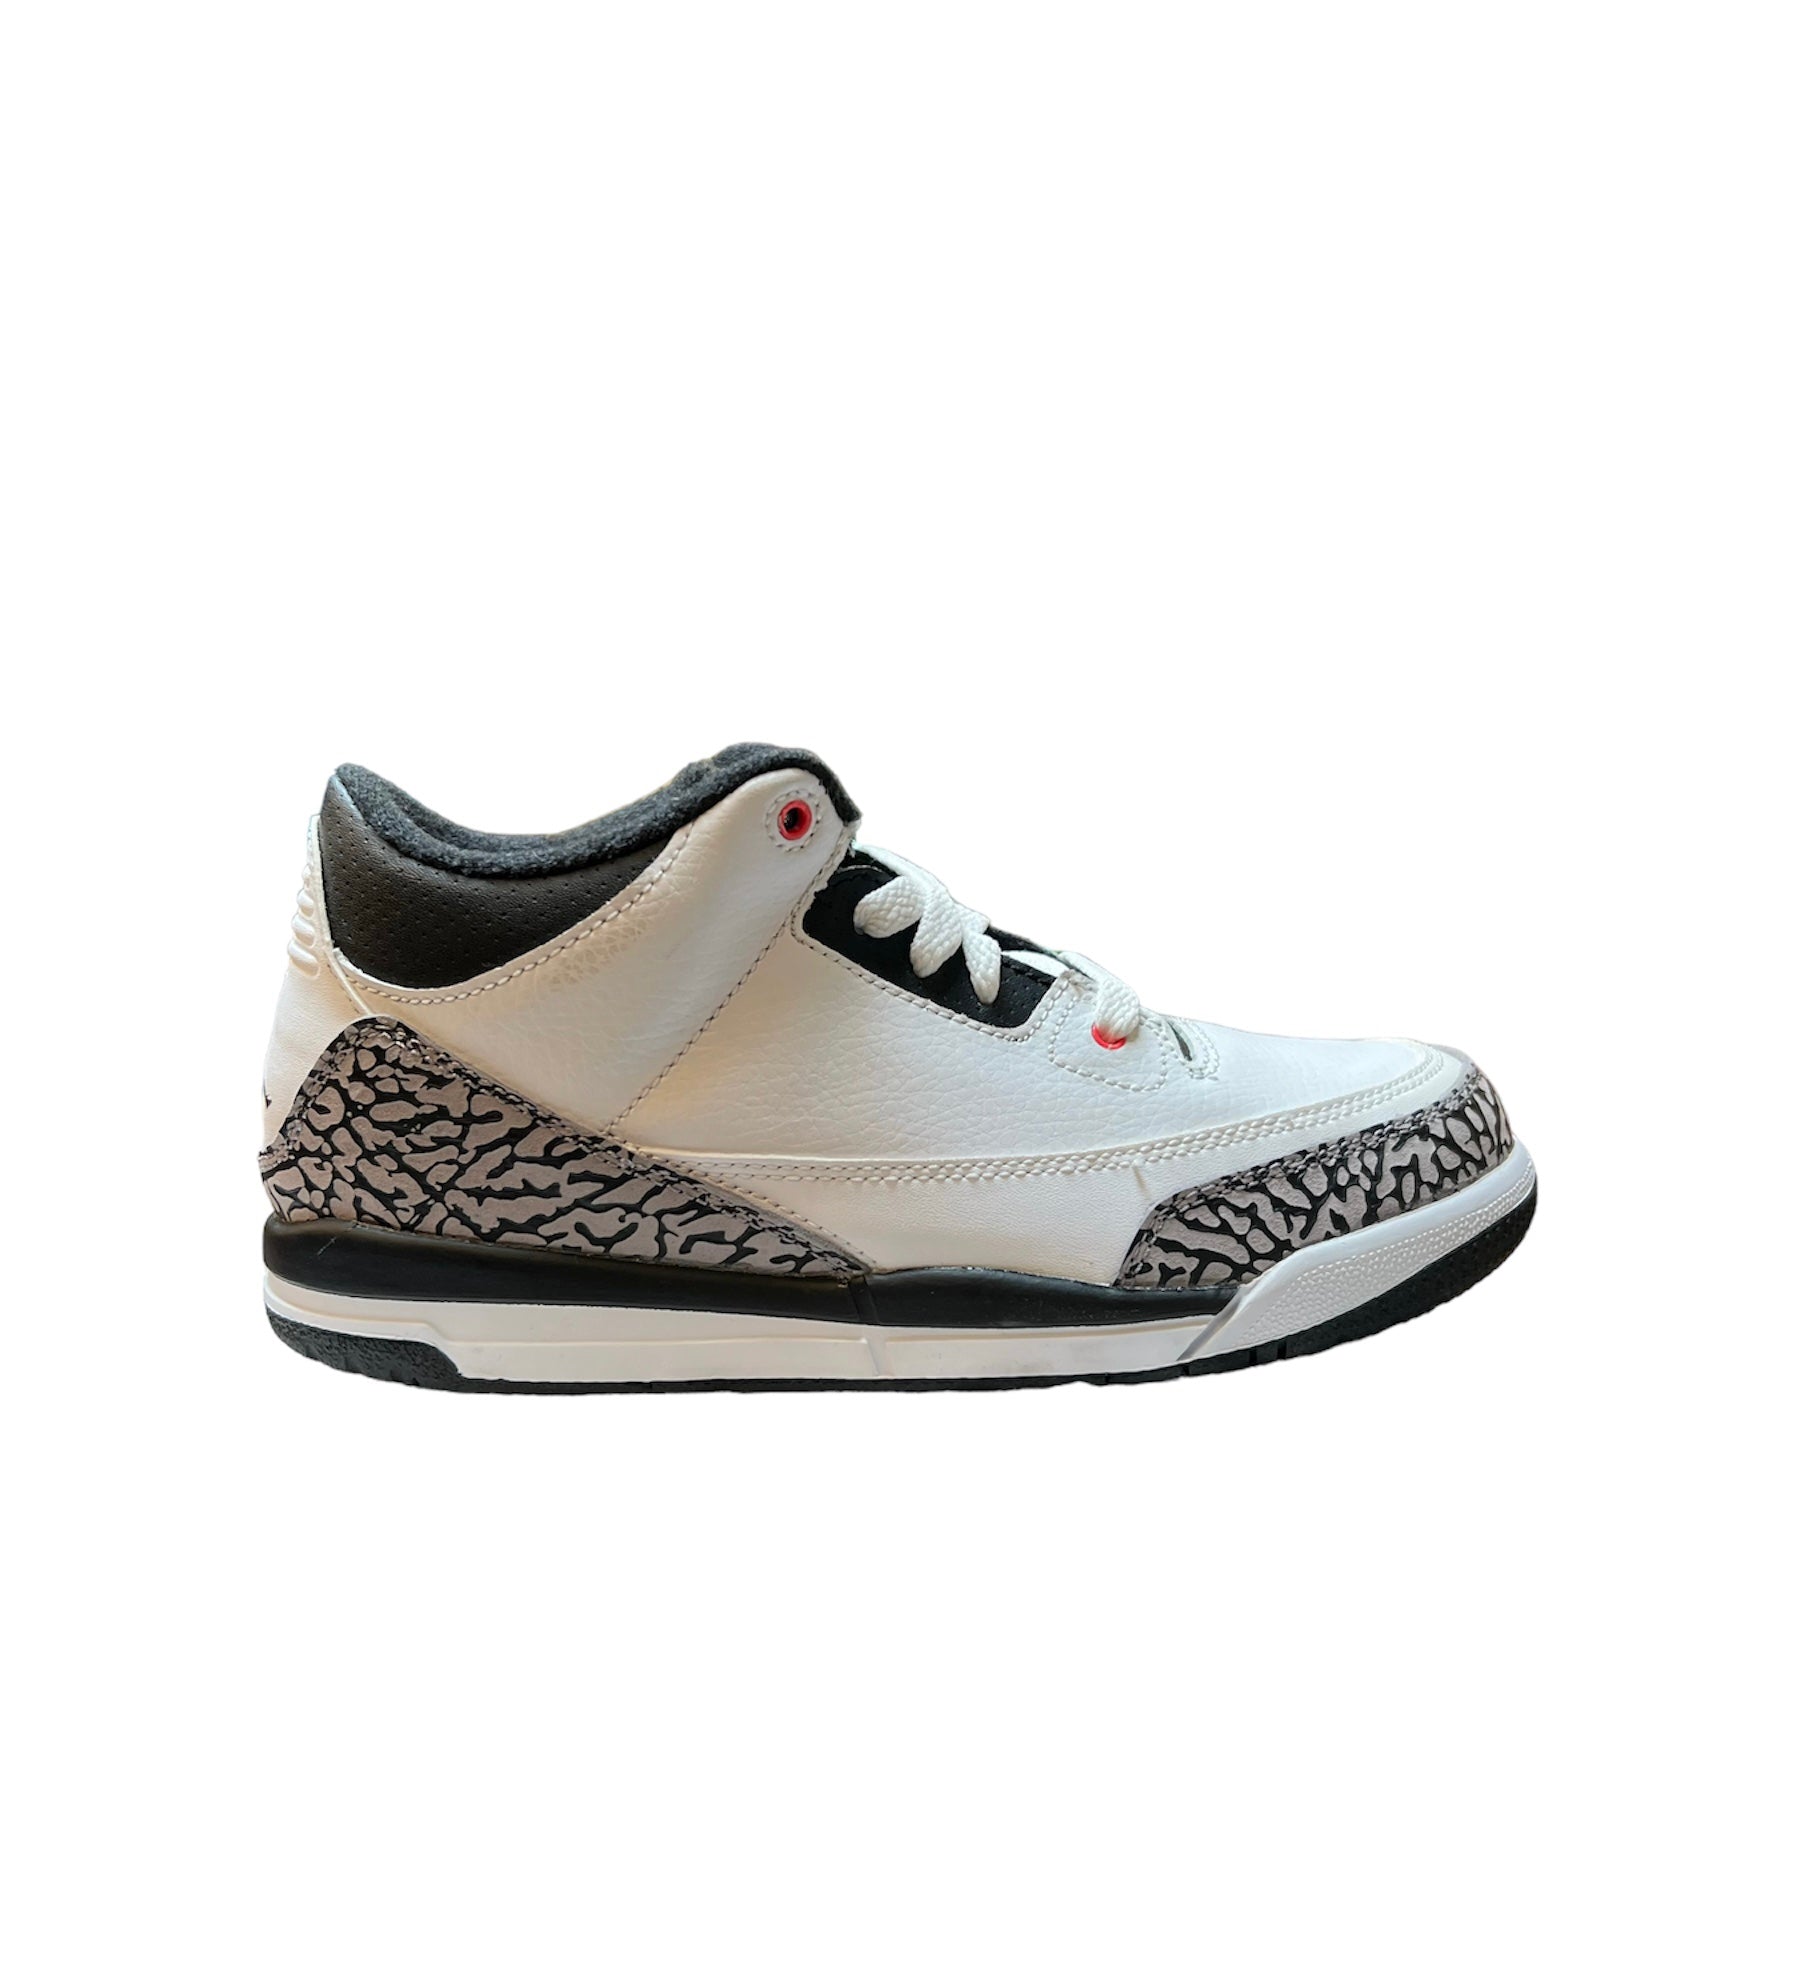 Air Jordan 3 Retro "Infrared" PS